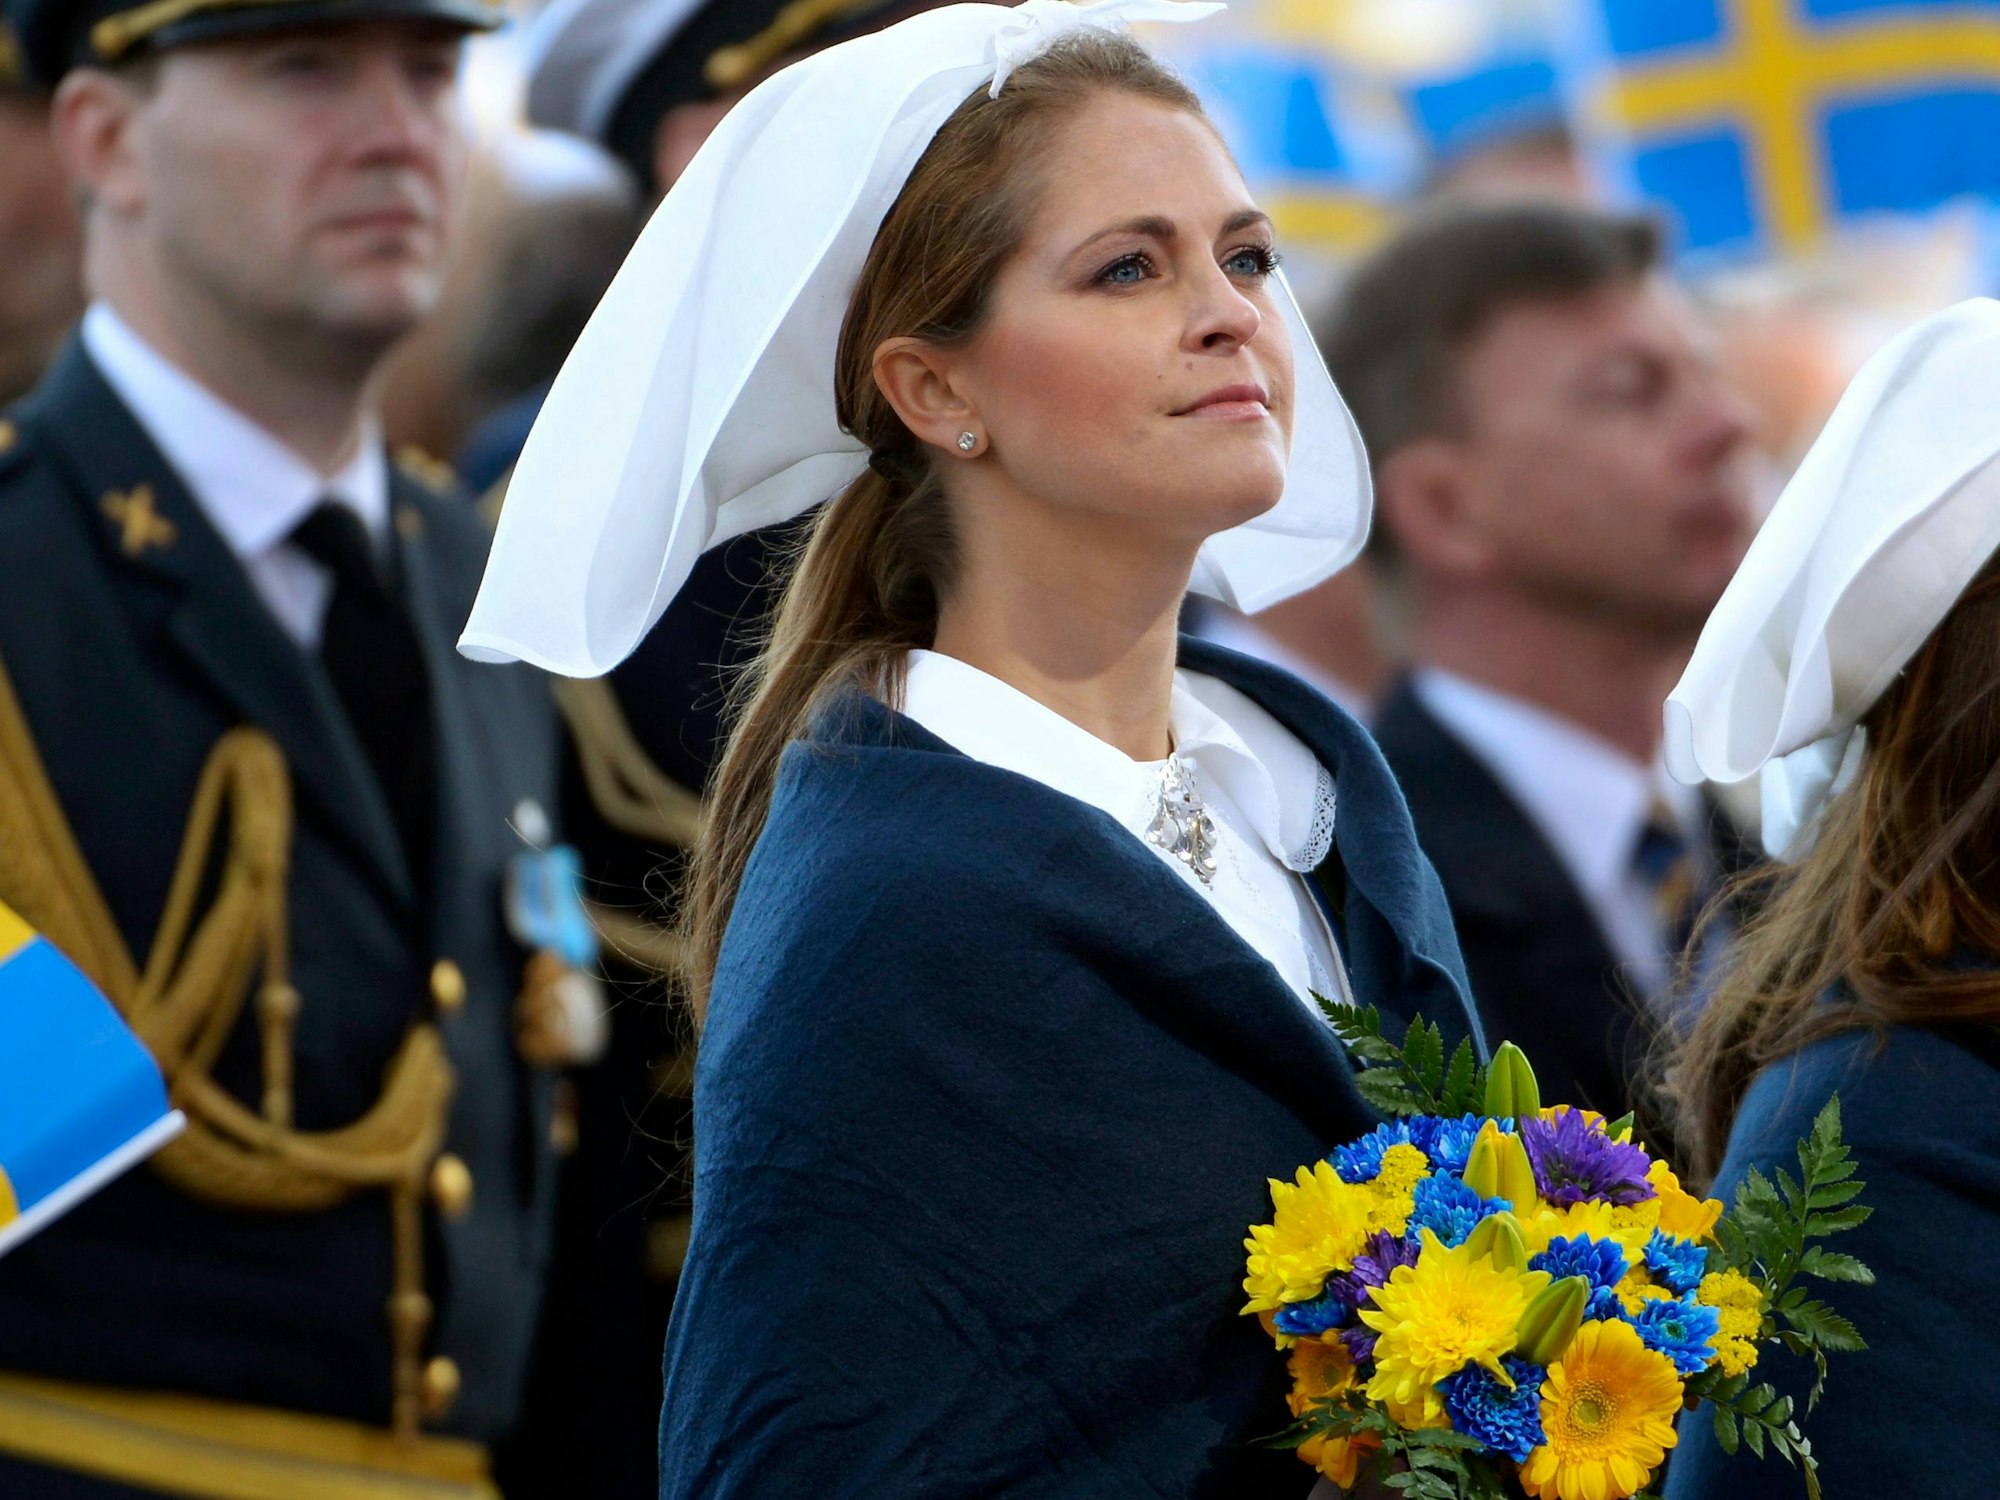 Zuletzt blieb Prinzessin Madeleine dem schwedischen Nationalfeiertag am 6. Juni fern. Ein Pflichttermin für die Royals. Da brachte ihr auch die Nachricht keine Pluspunkte ein, dass sie auf ihre königliche Apanage verzichtet.